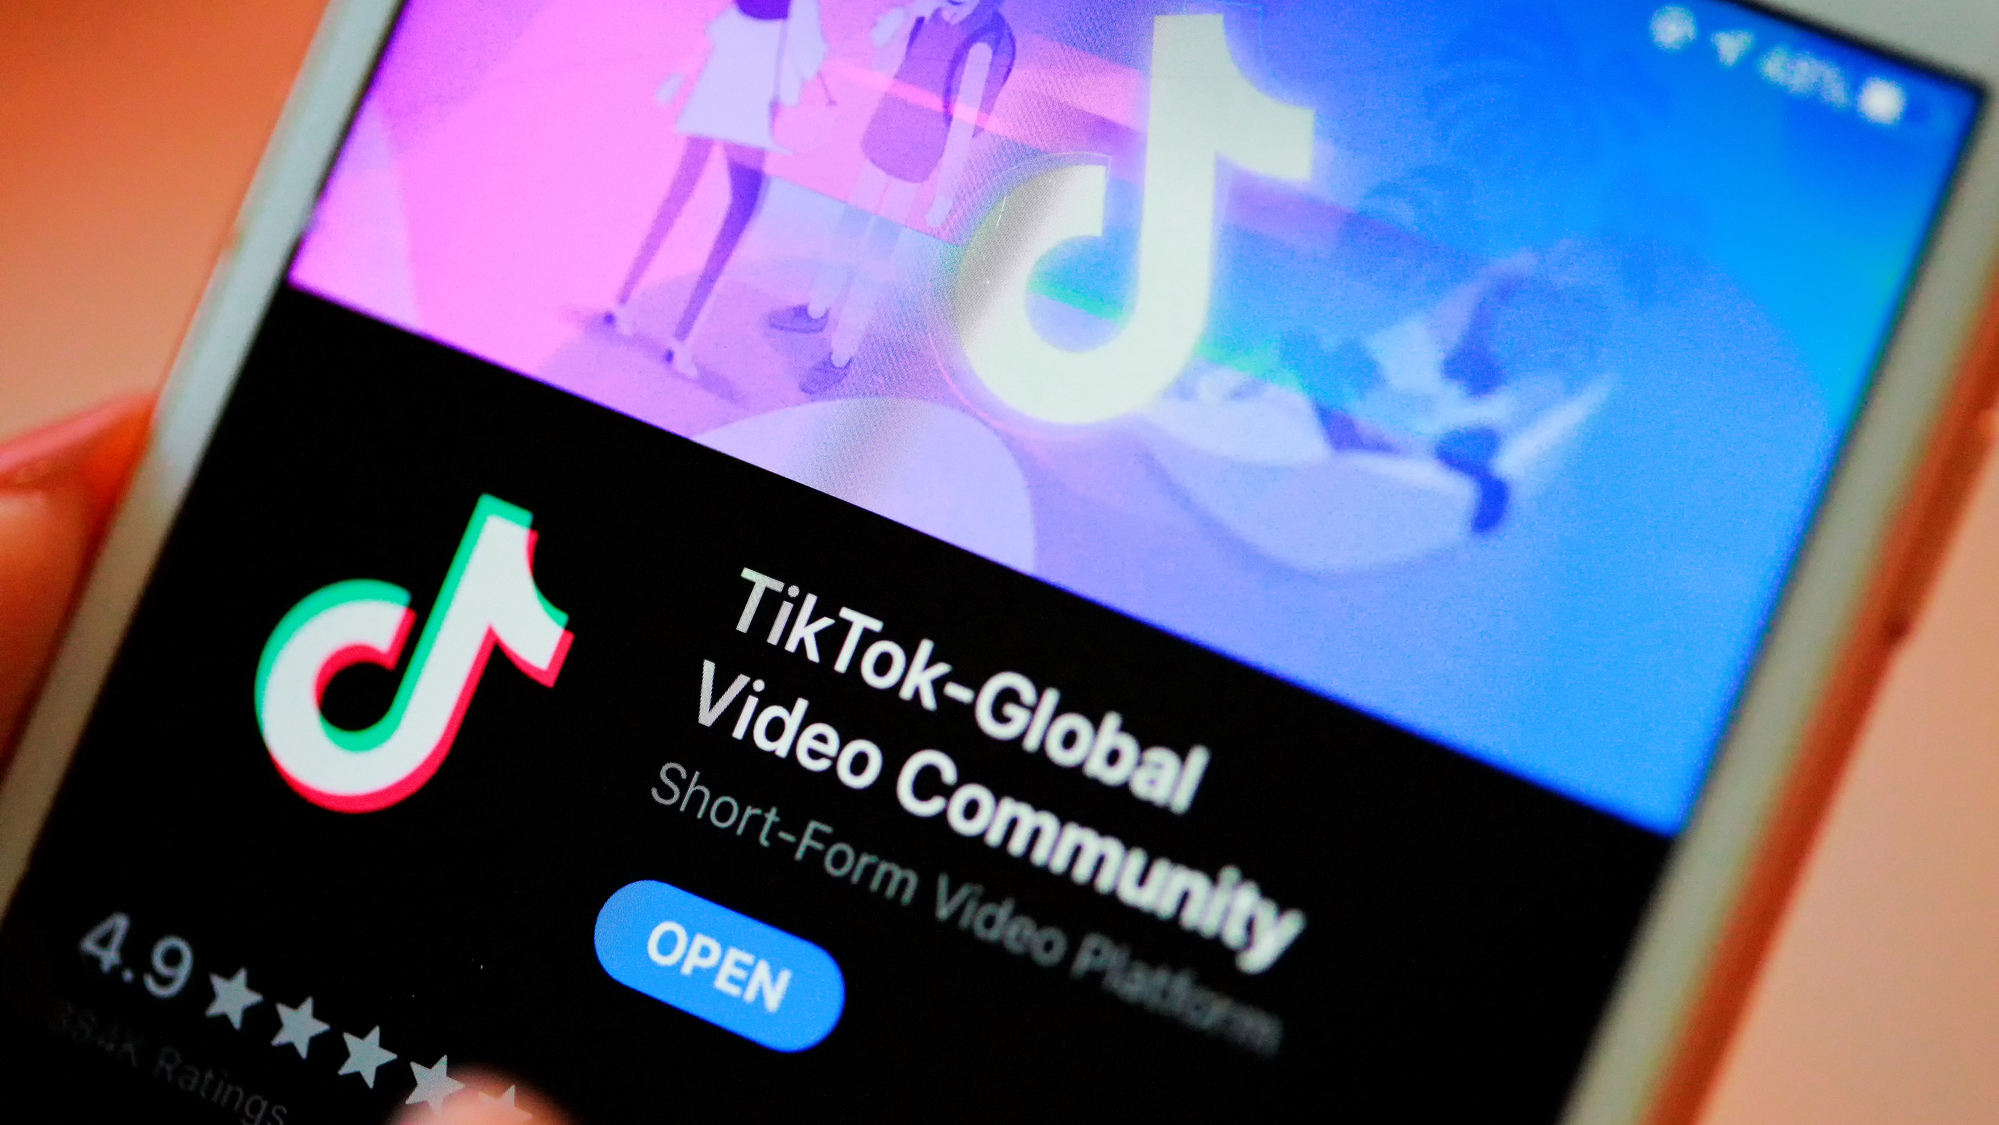 TikTok app download screen on smartphone